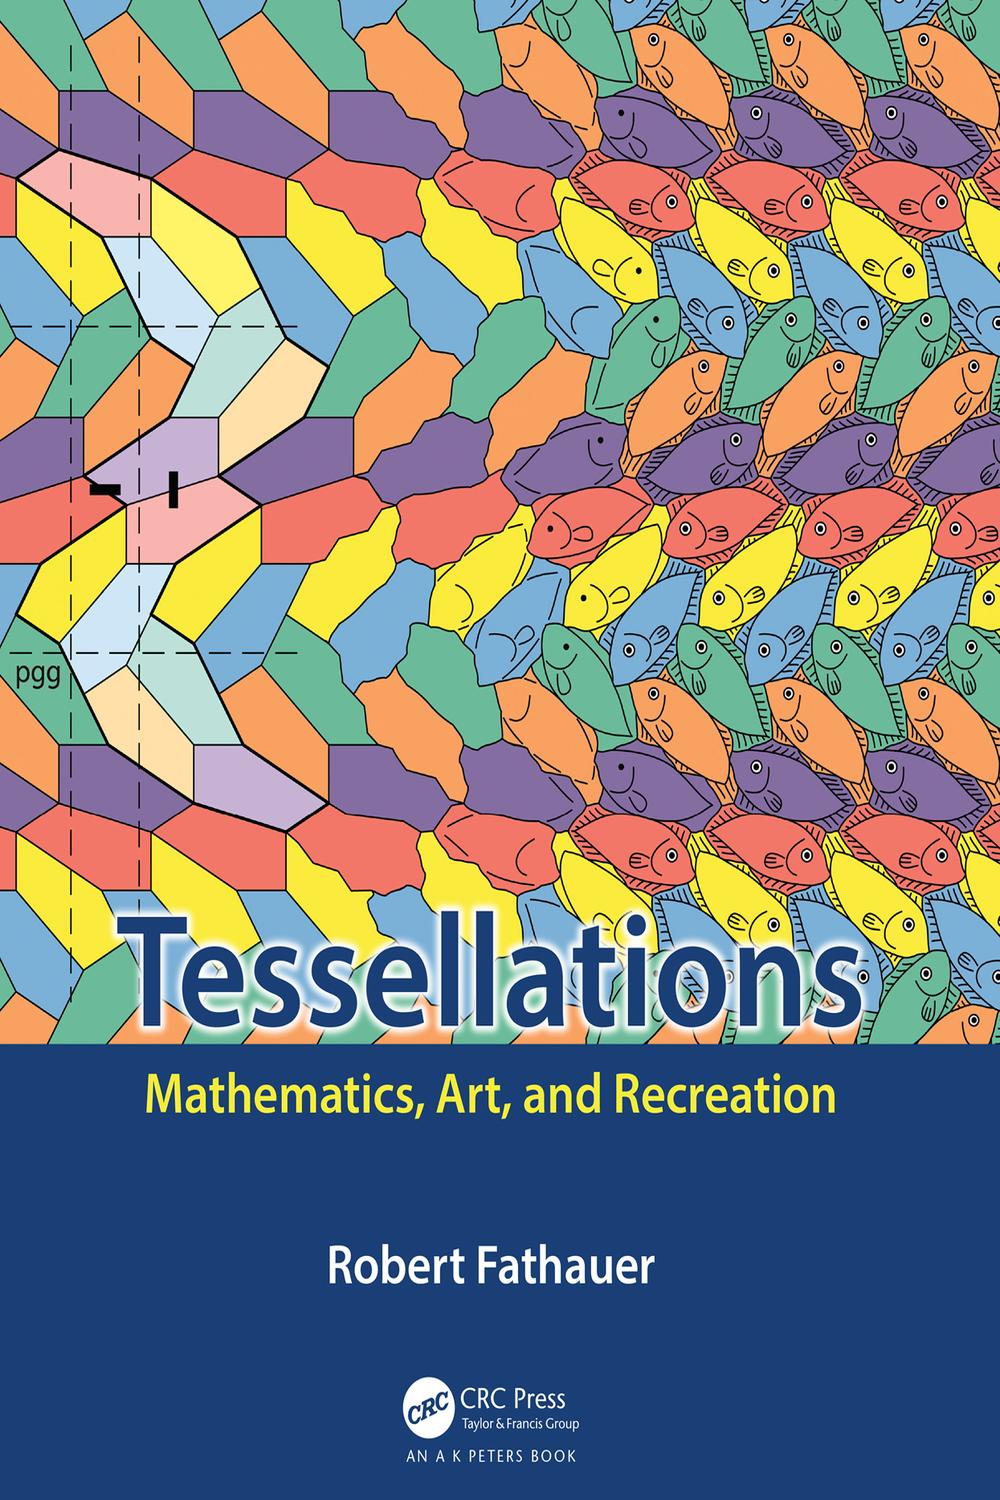 PDF] Tessellations by Robert Fathauer eBook | Perlego